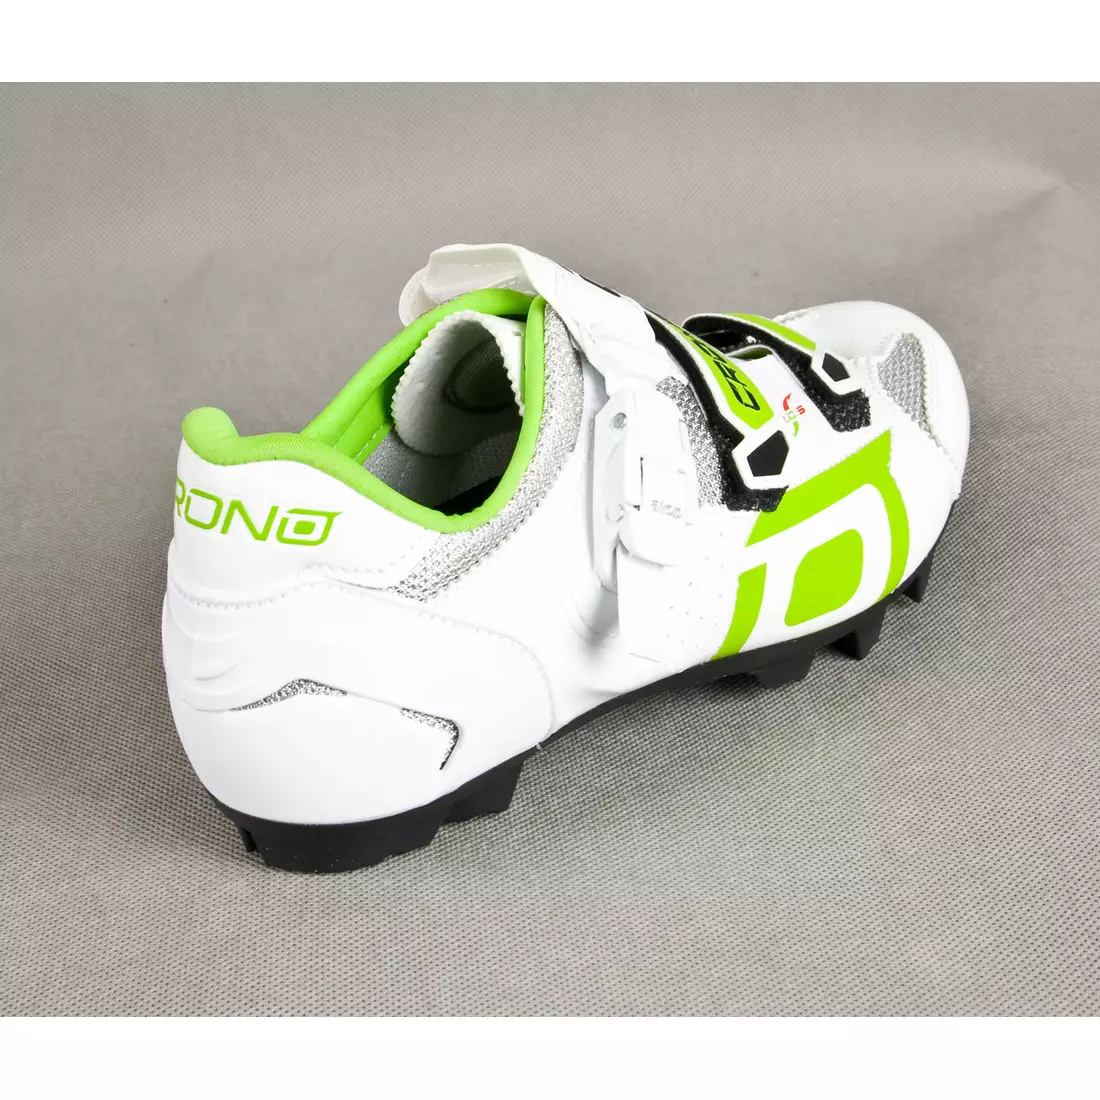 CRONO TRACK - MTB kerékpáros cipő - szín: fehér és zöld